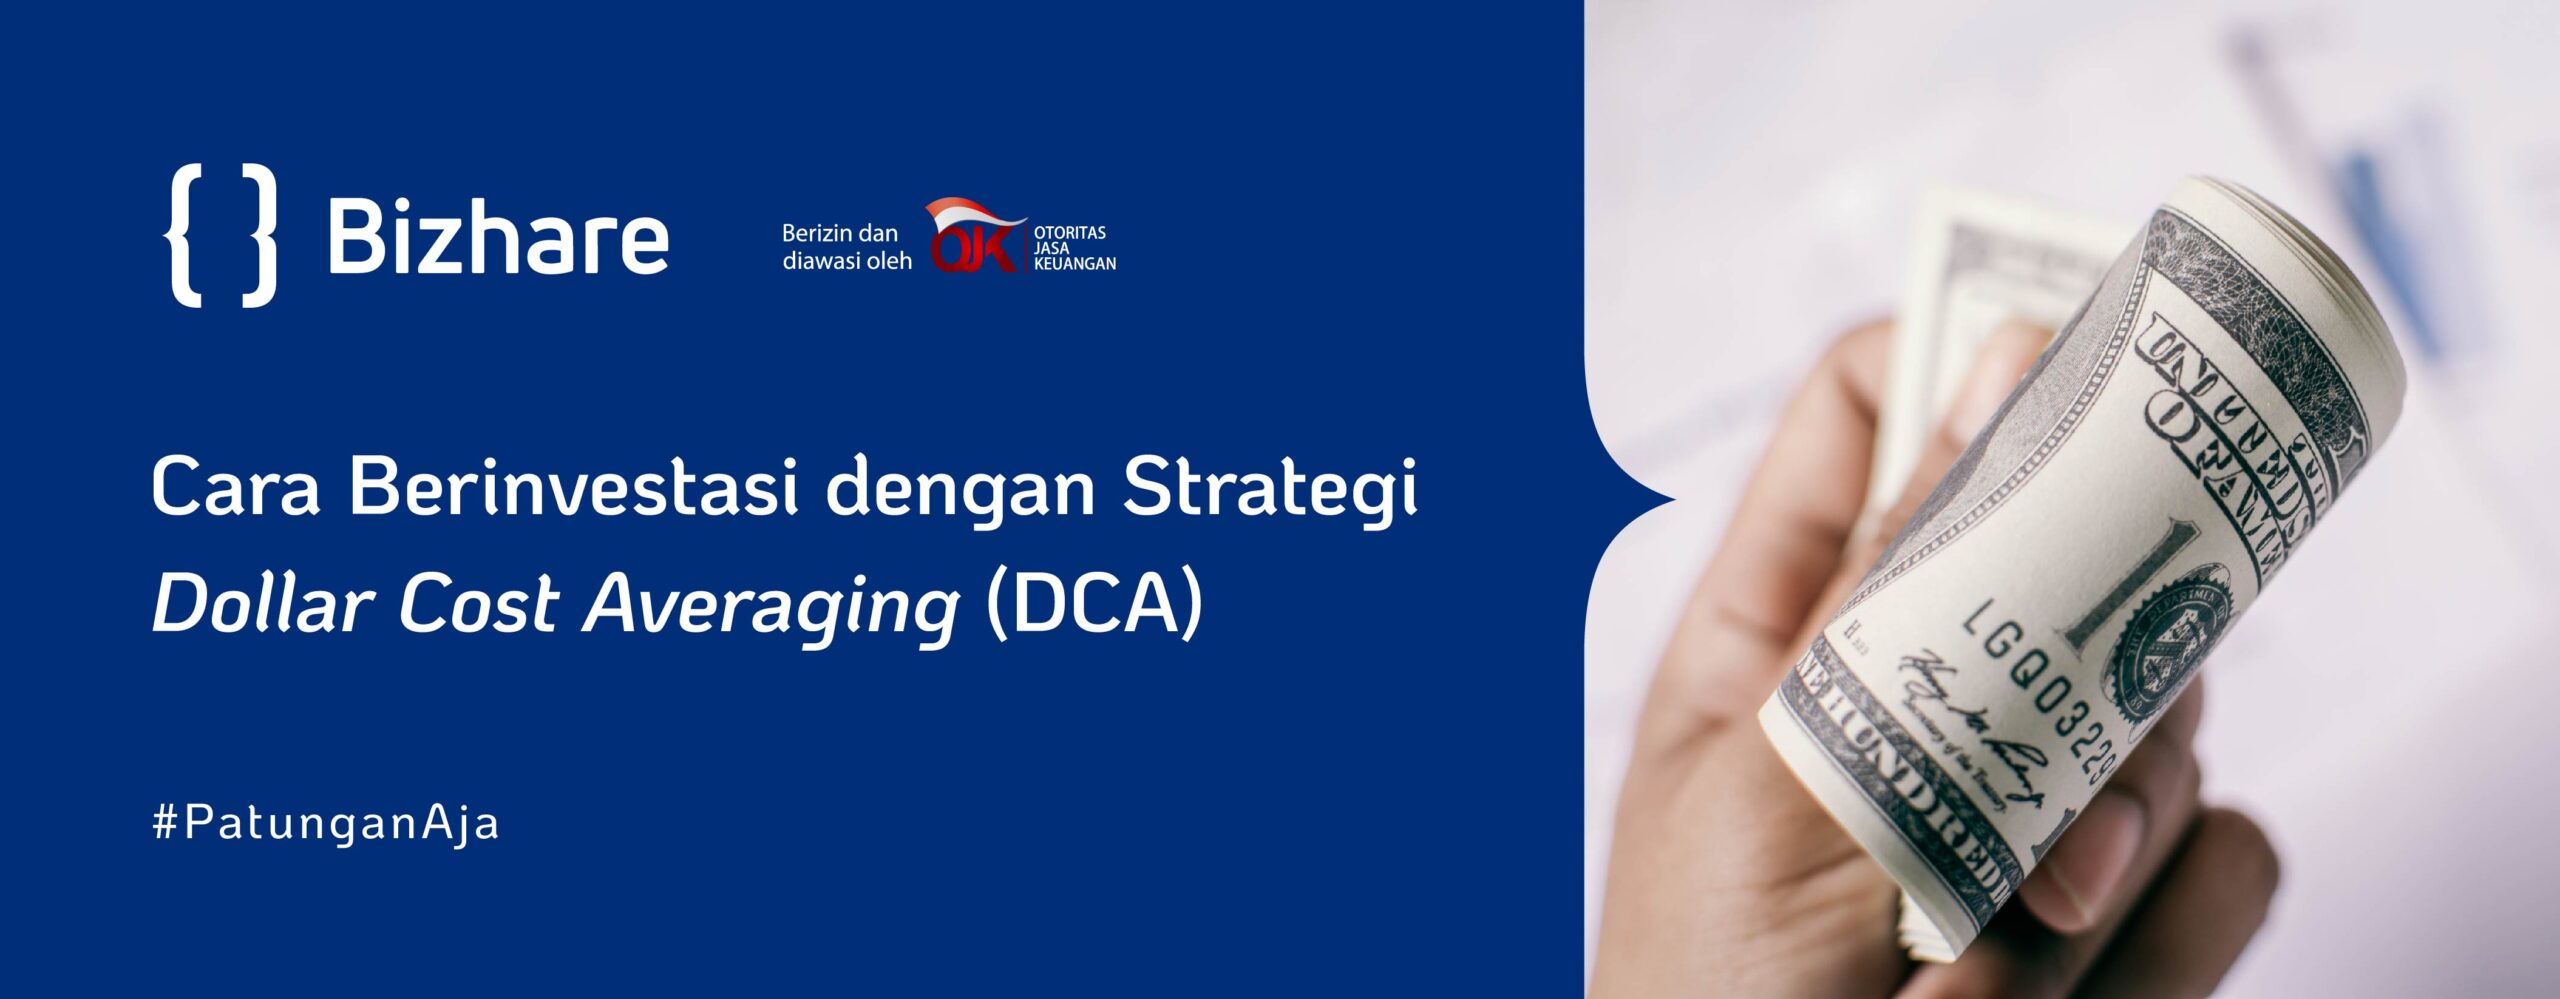 Cara Berinvestasi dengan Strategi Dollar Cost Averaging (DCA)